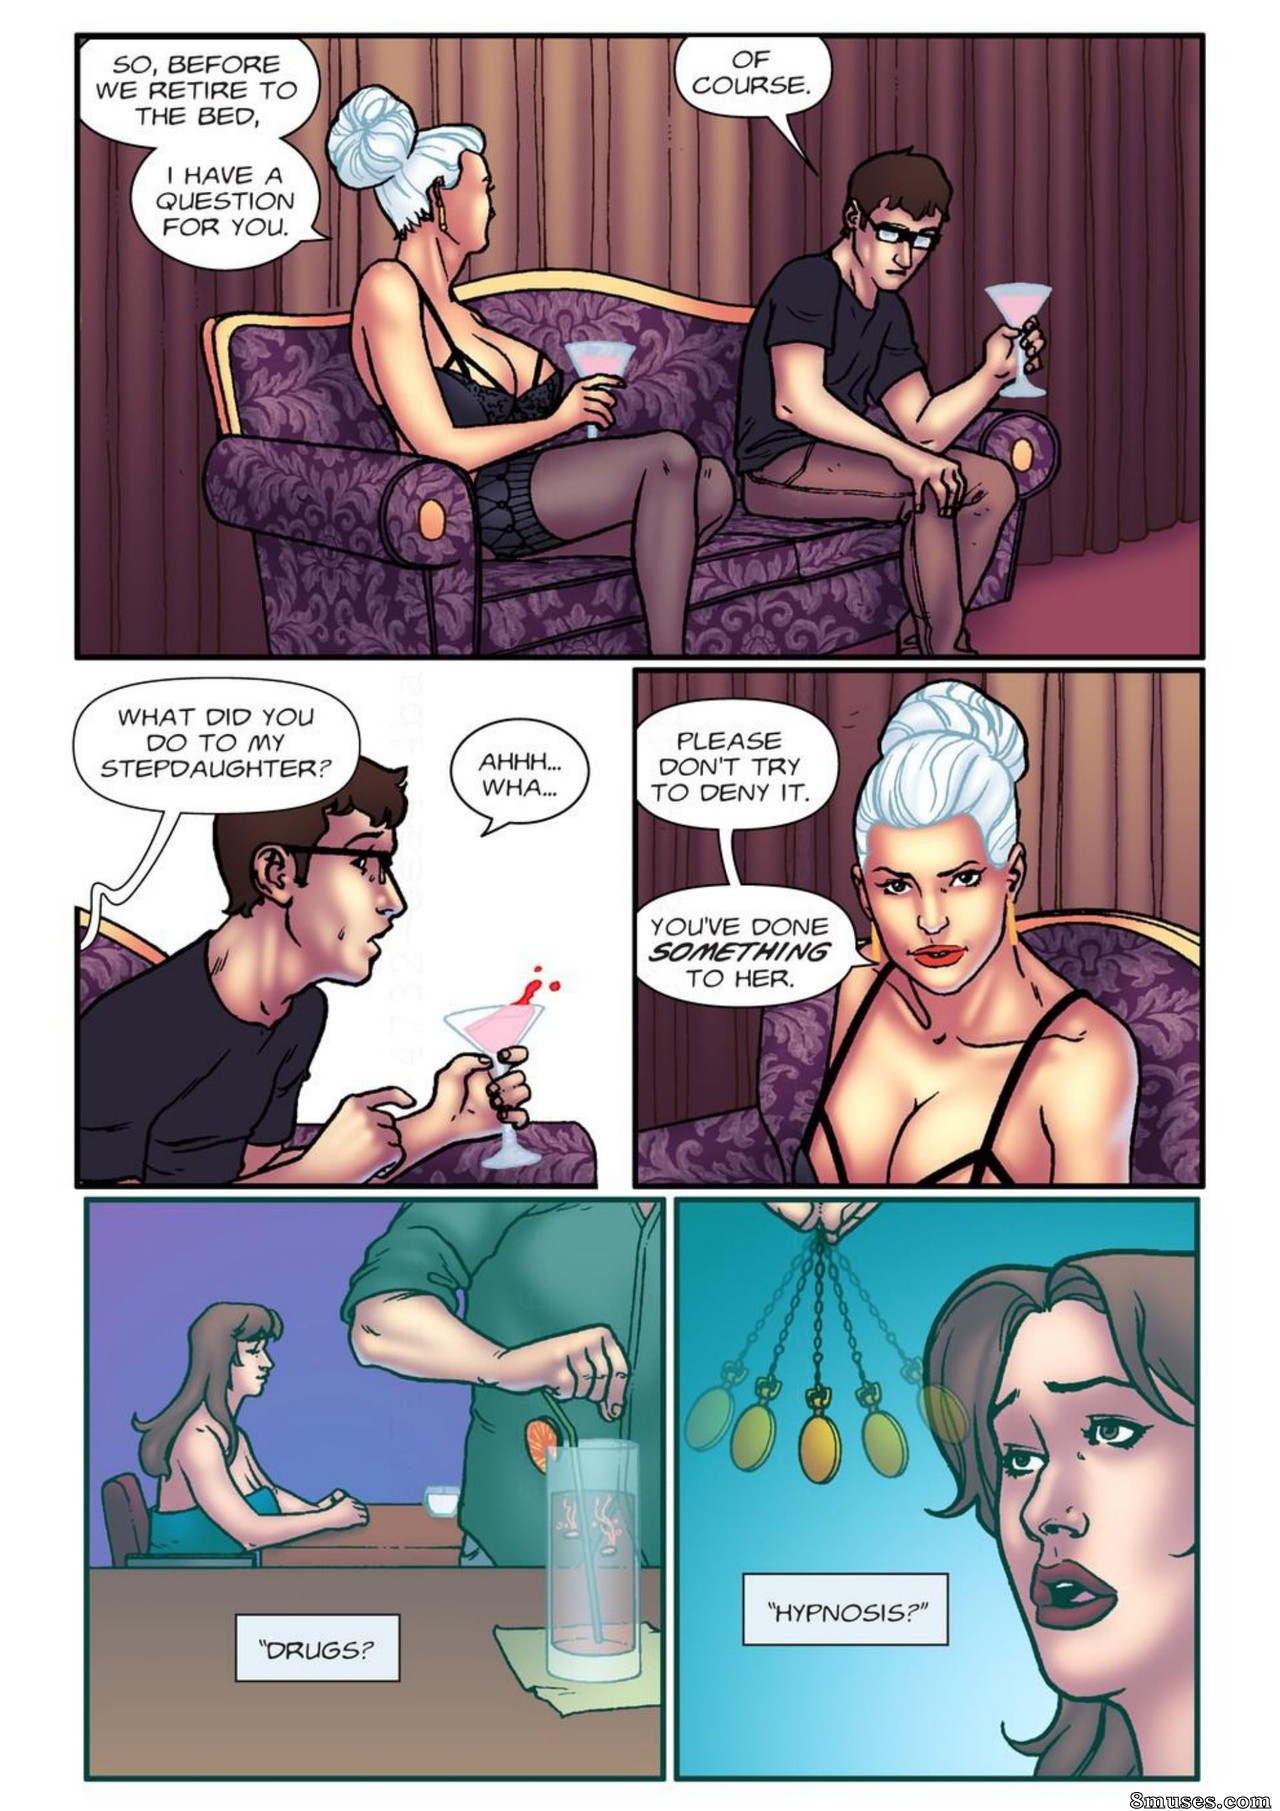 Cartoon Hidden Porn - Hidden Knowledge Issue 21 - 8muses Comics - Sex Comics and Porn Cartoons